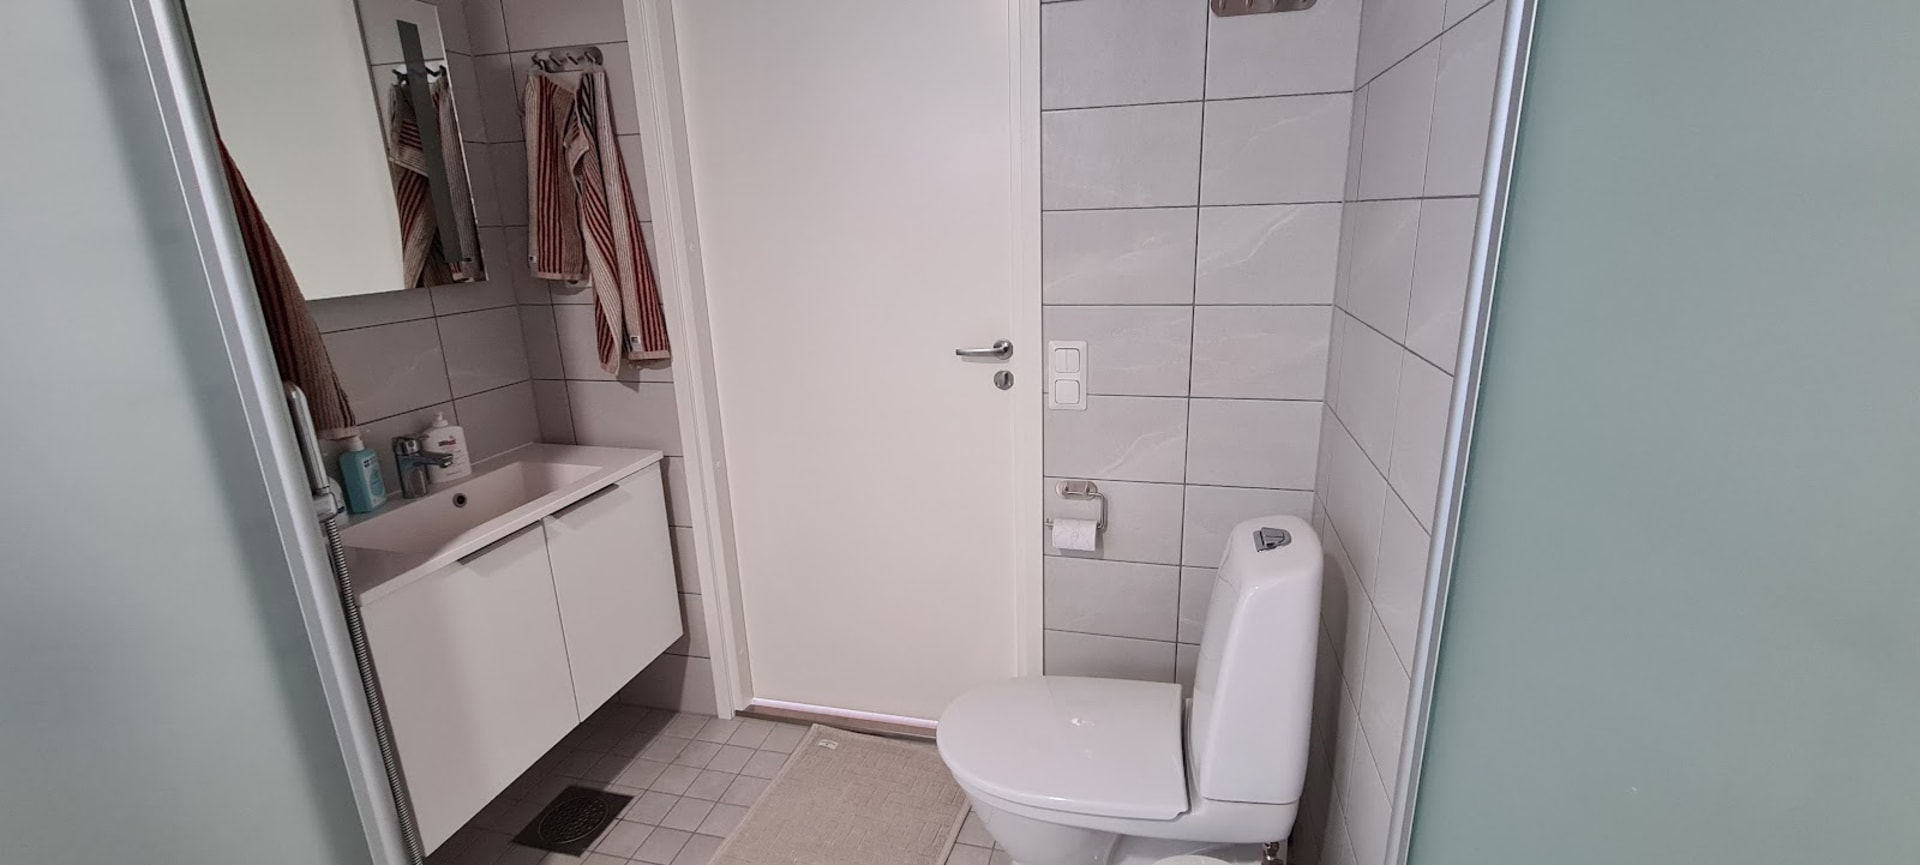 Pesuhuoneen vieressä oleva WC